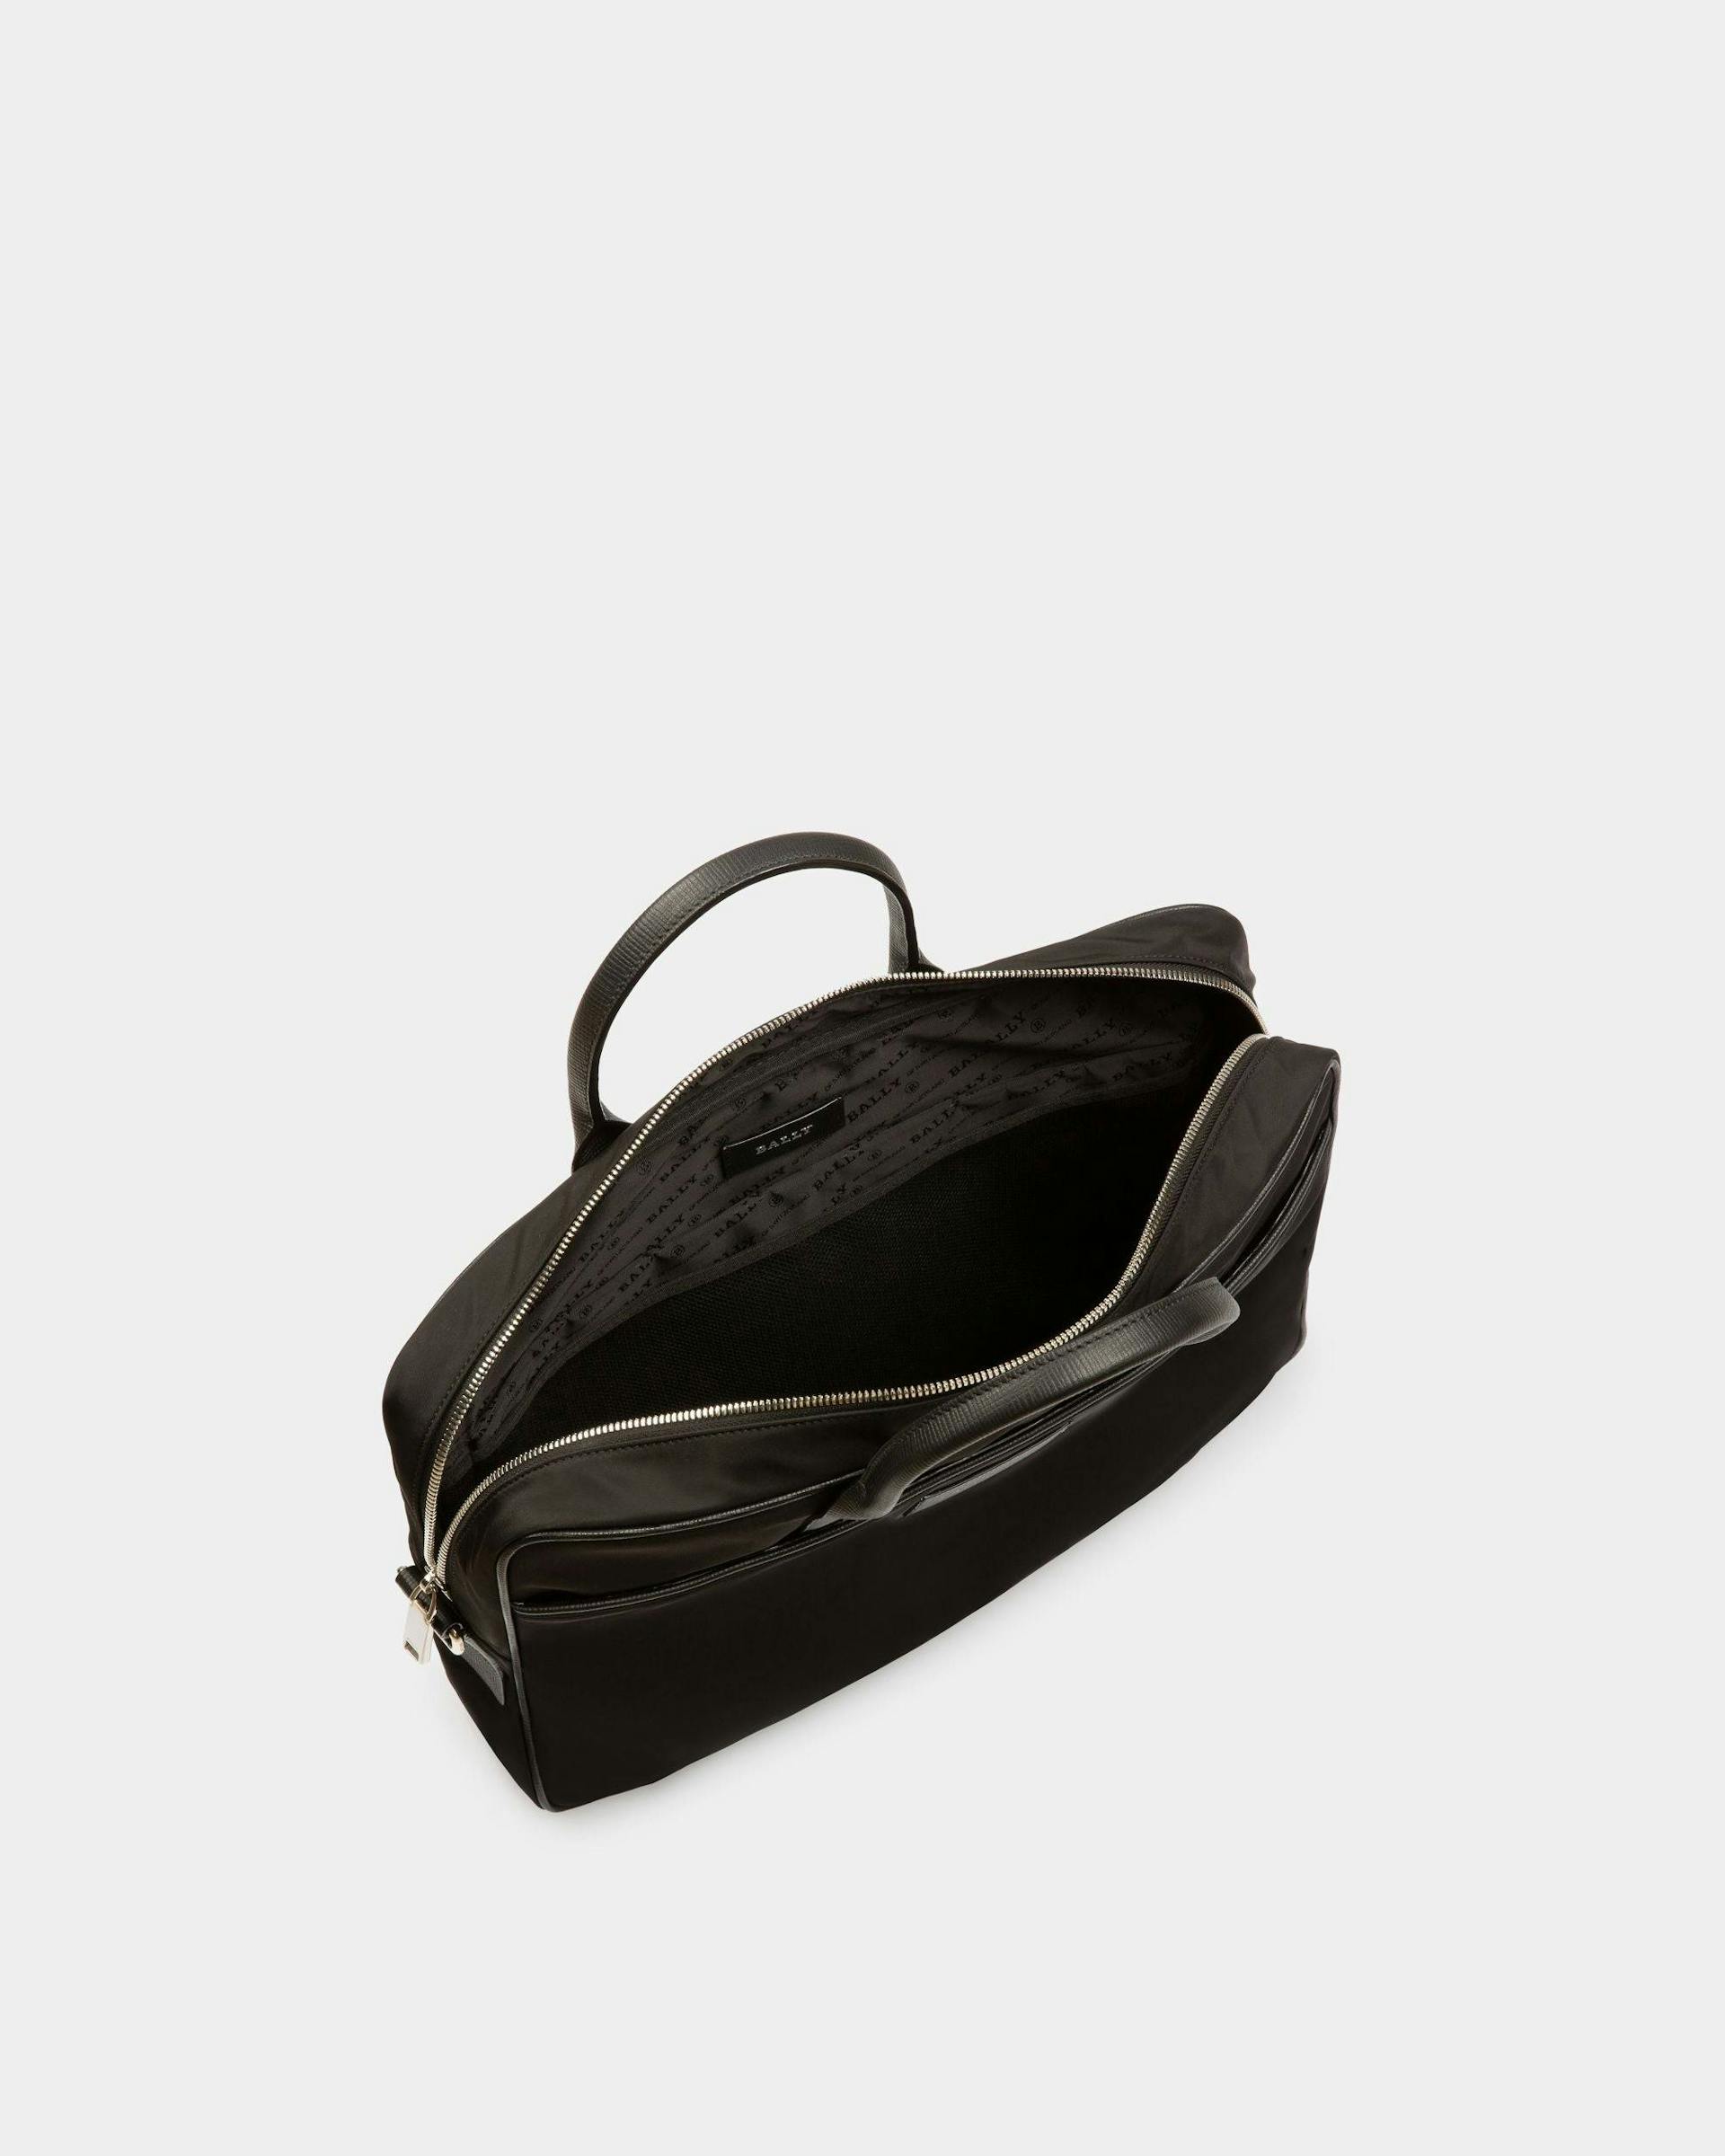 Men's Faldy Nylon Business Bag In Black | Bally | Still Life Open / Inside